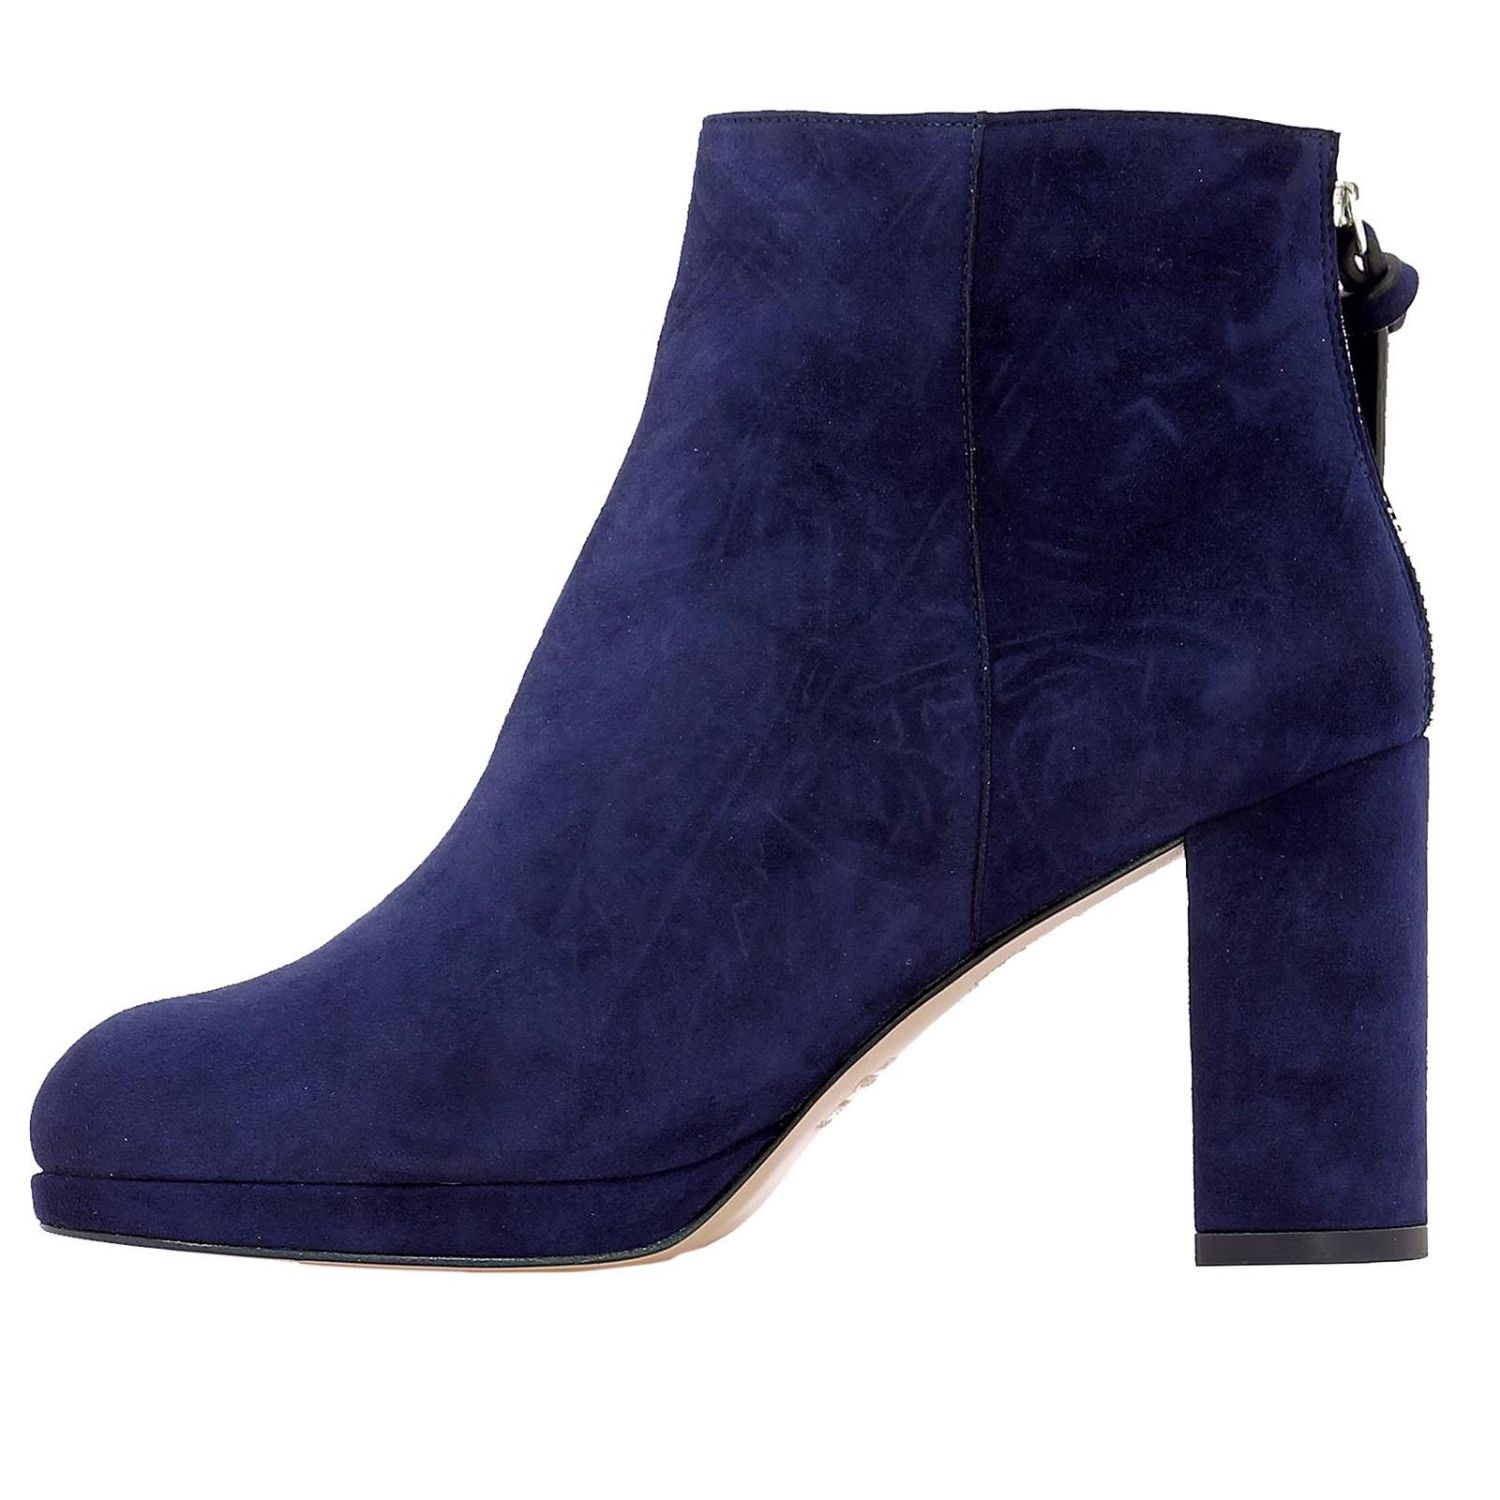 Stuart Weitzman Outlet: High heel shoes women - Blue | High Heel Shoes ...